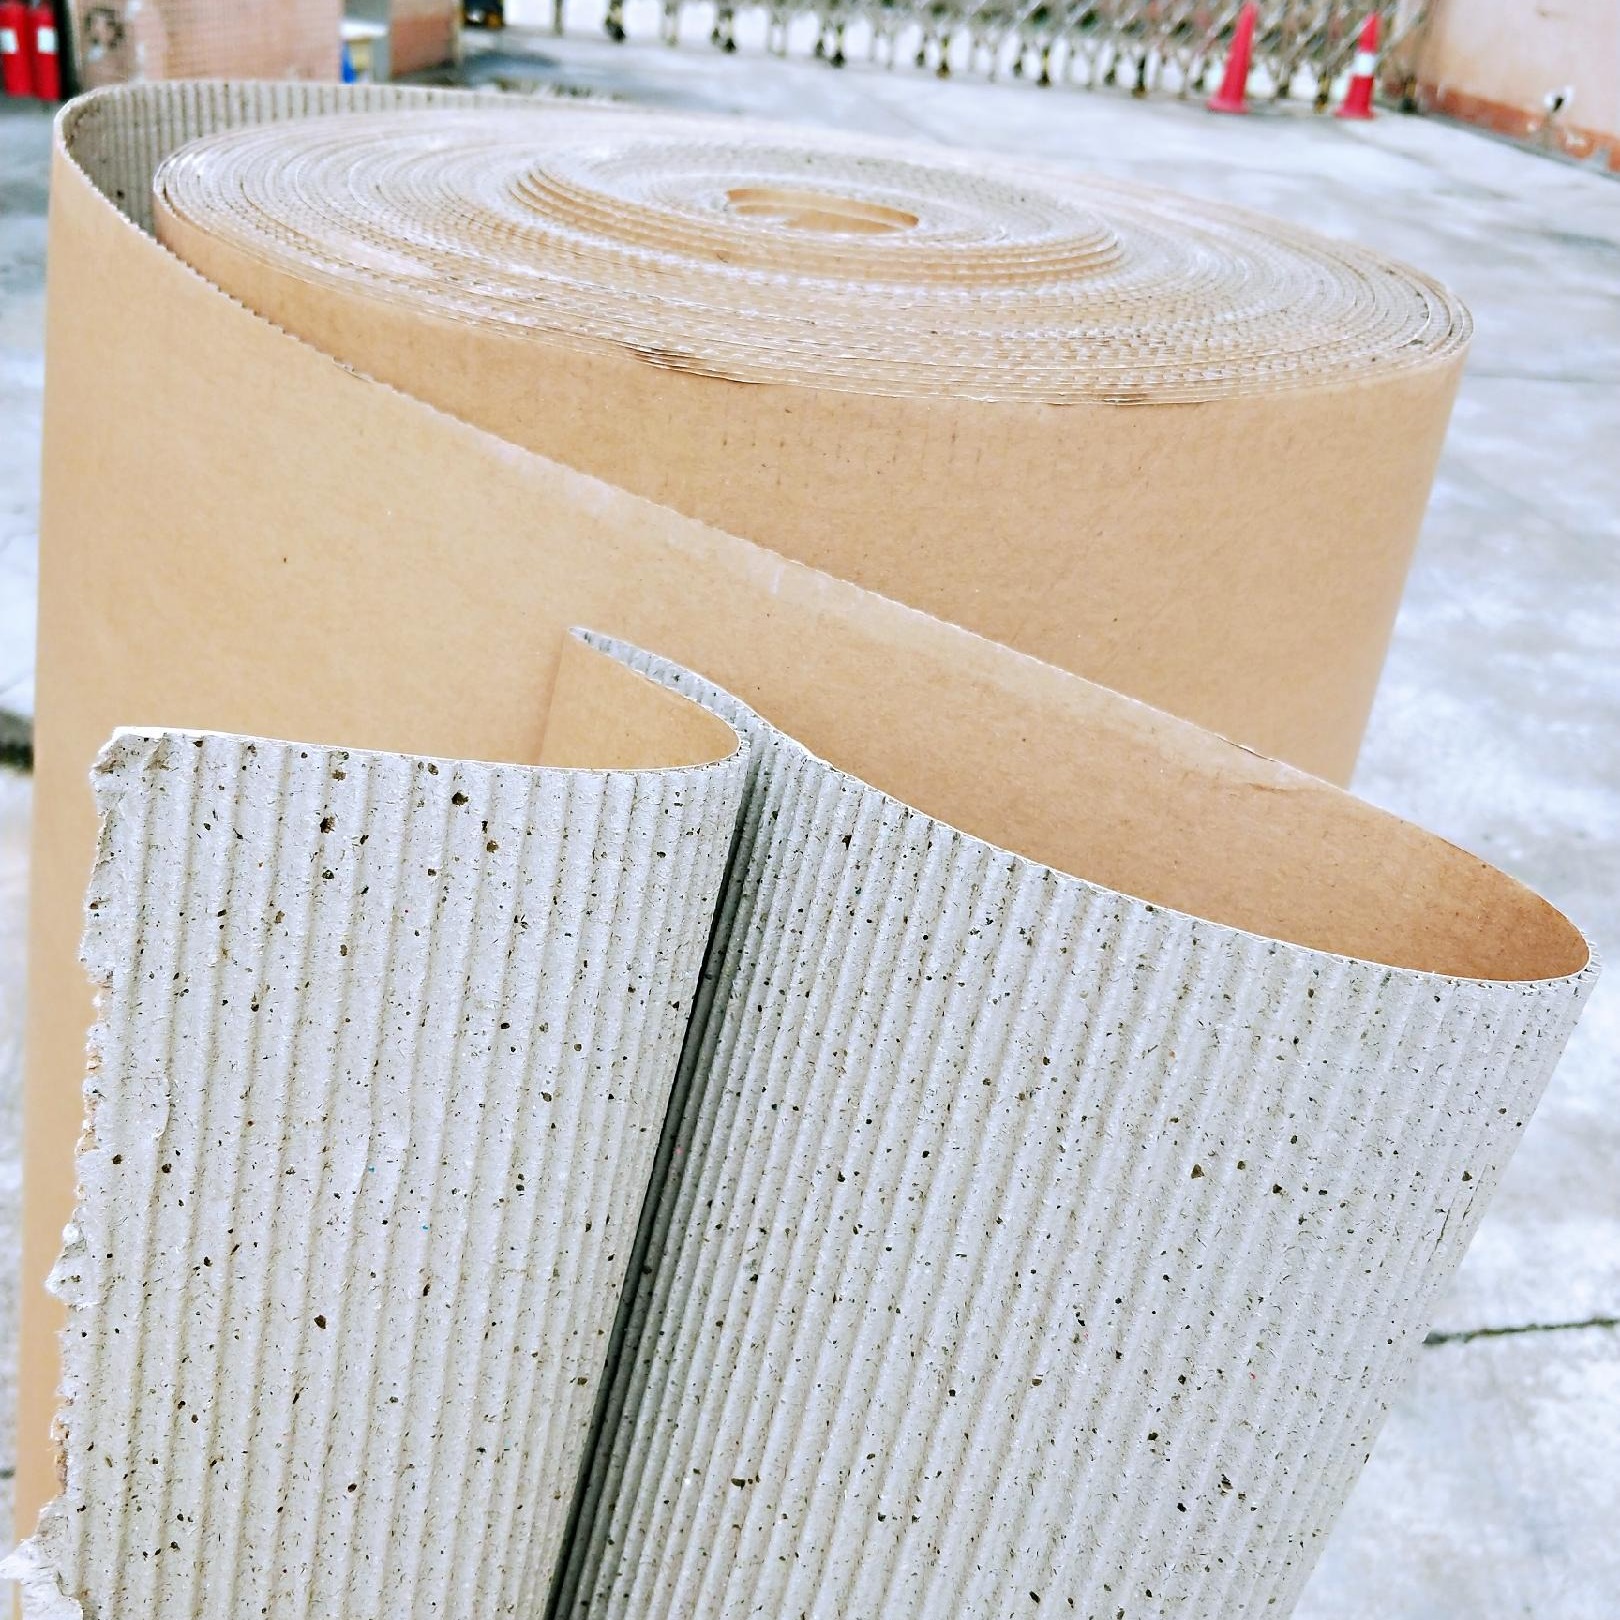 双层瓦楞纸 见坑纸1.2*50米 家具包装纸 印字纸皮 地板保护纸 家具包装纸